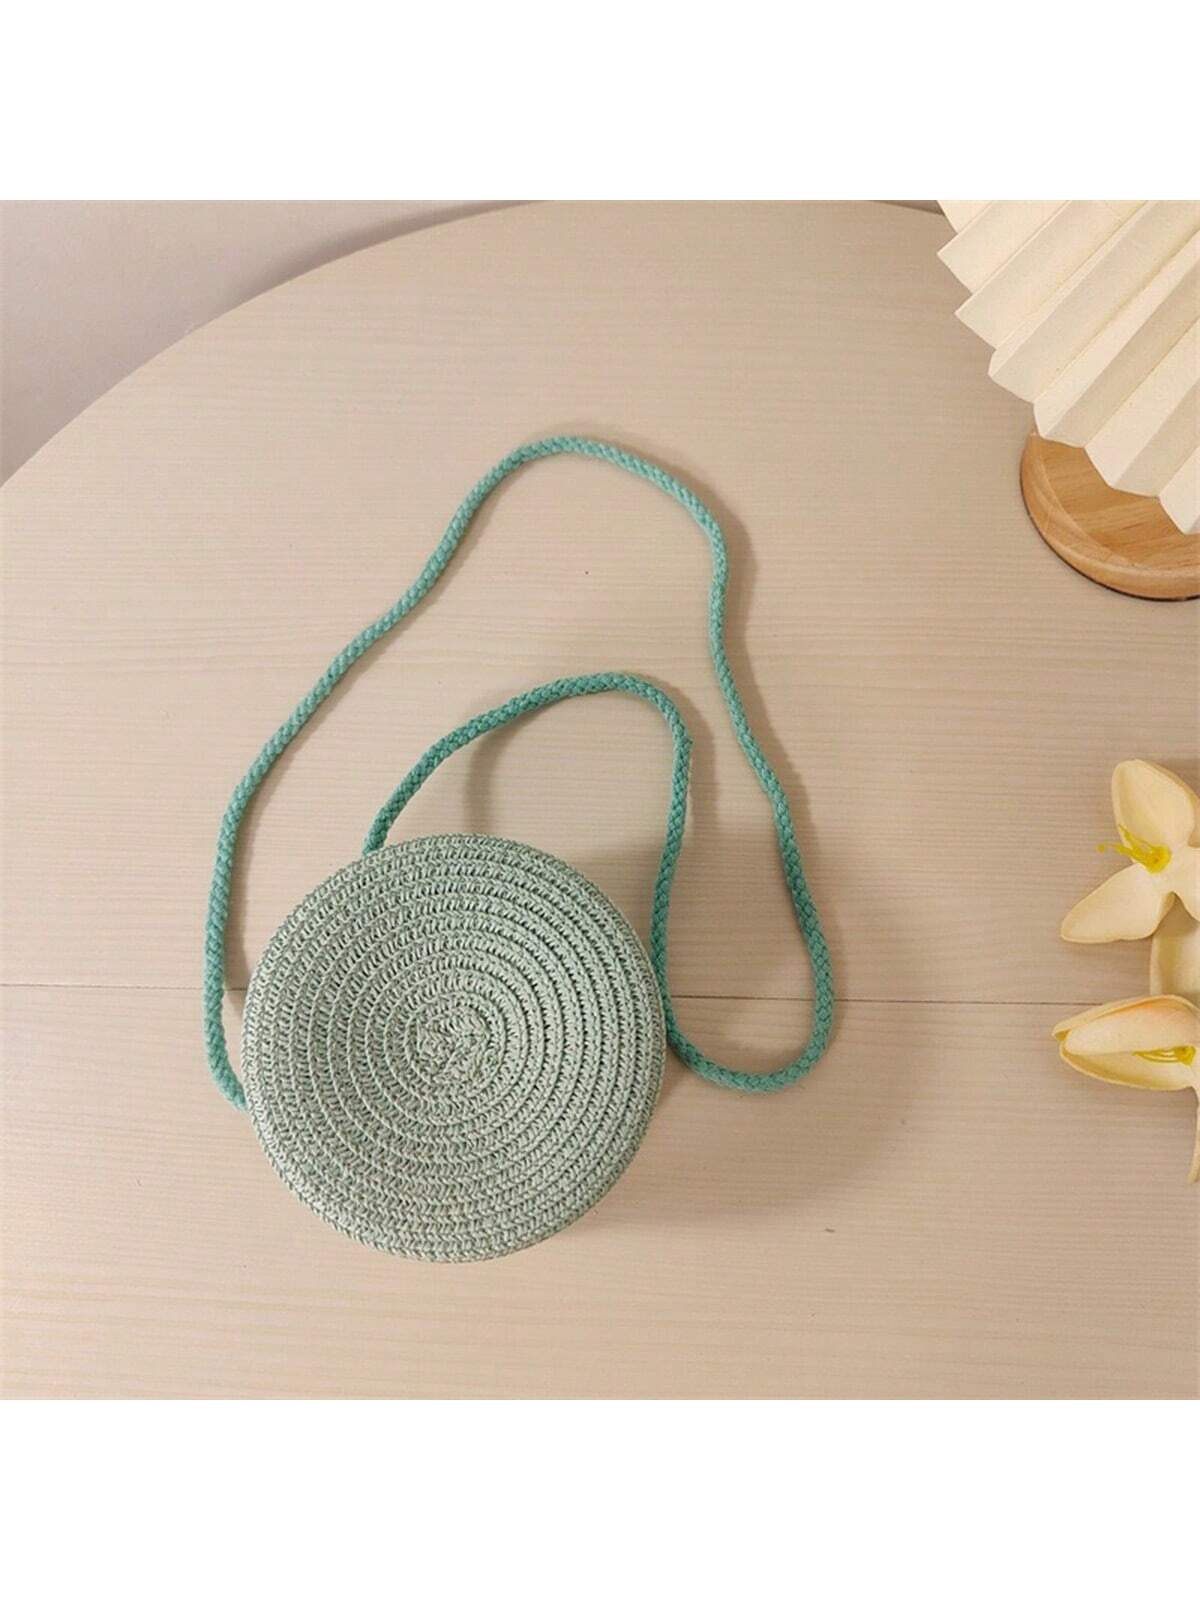 Мини-минималистичная соломенная сумка Простая круглая соломенная сумка, мятно-зеленый полая соломенная сумка бежевый